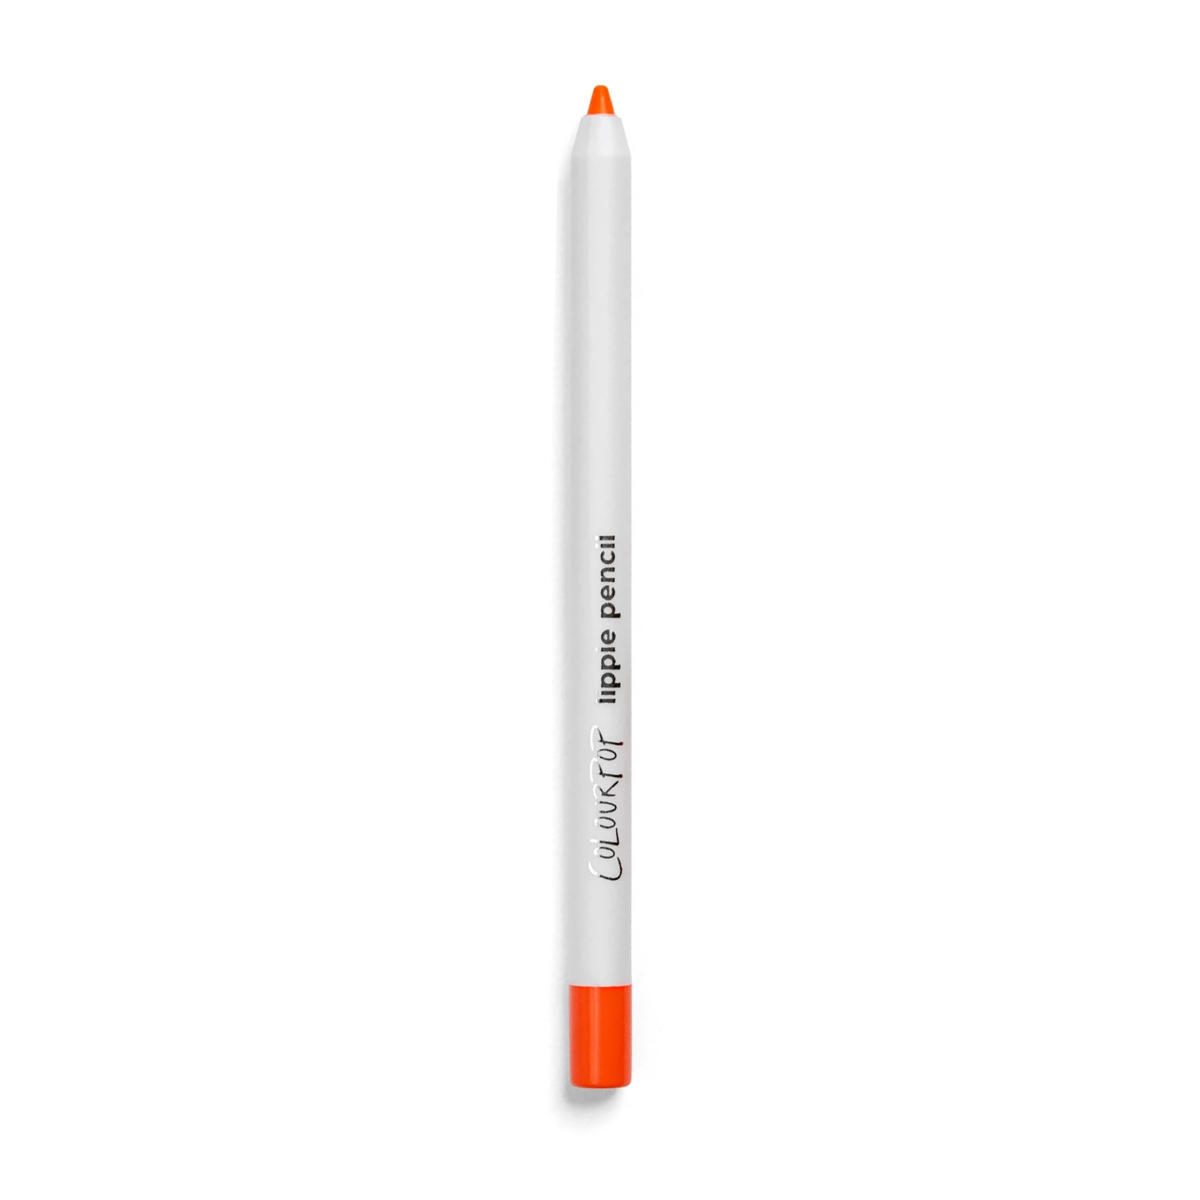 ColourPop Lippie Pencil Absolute Zero